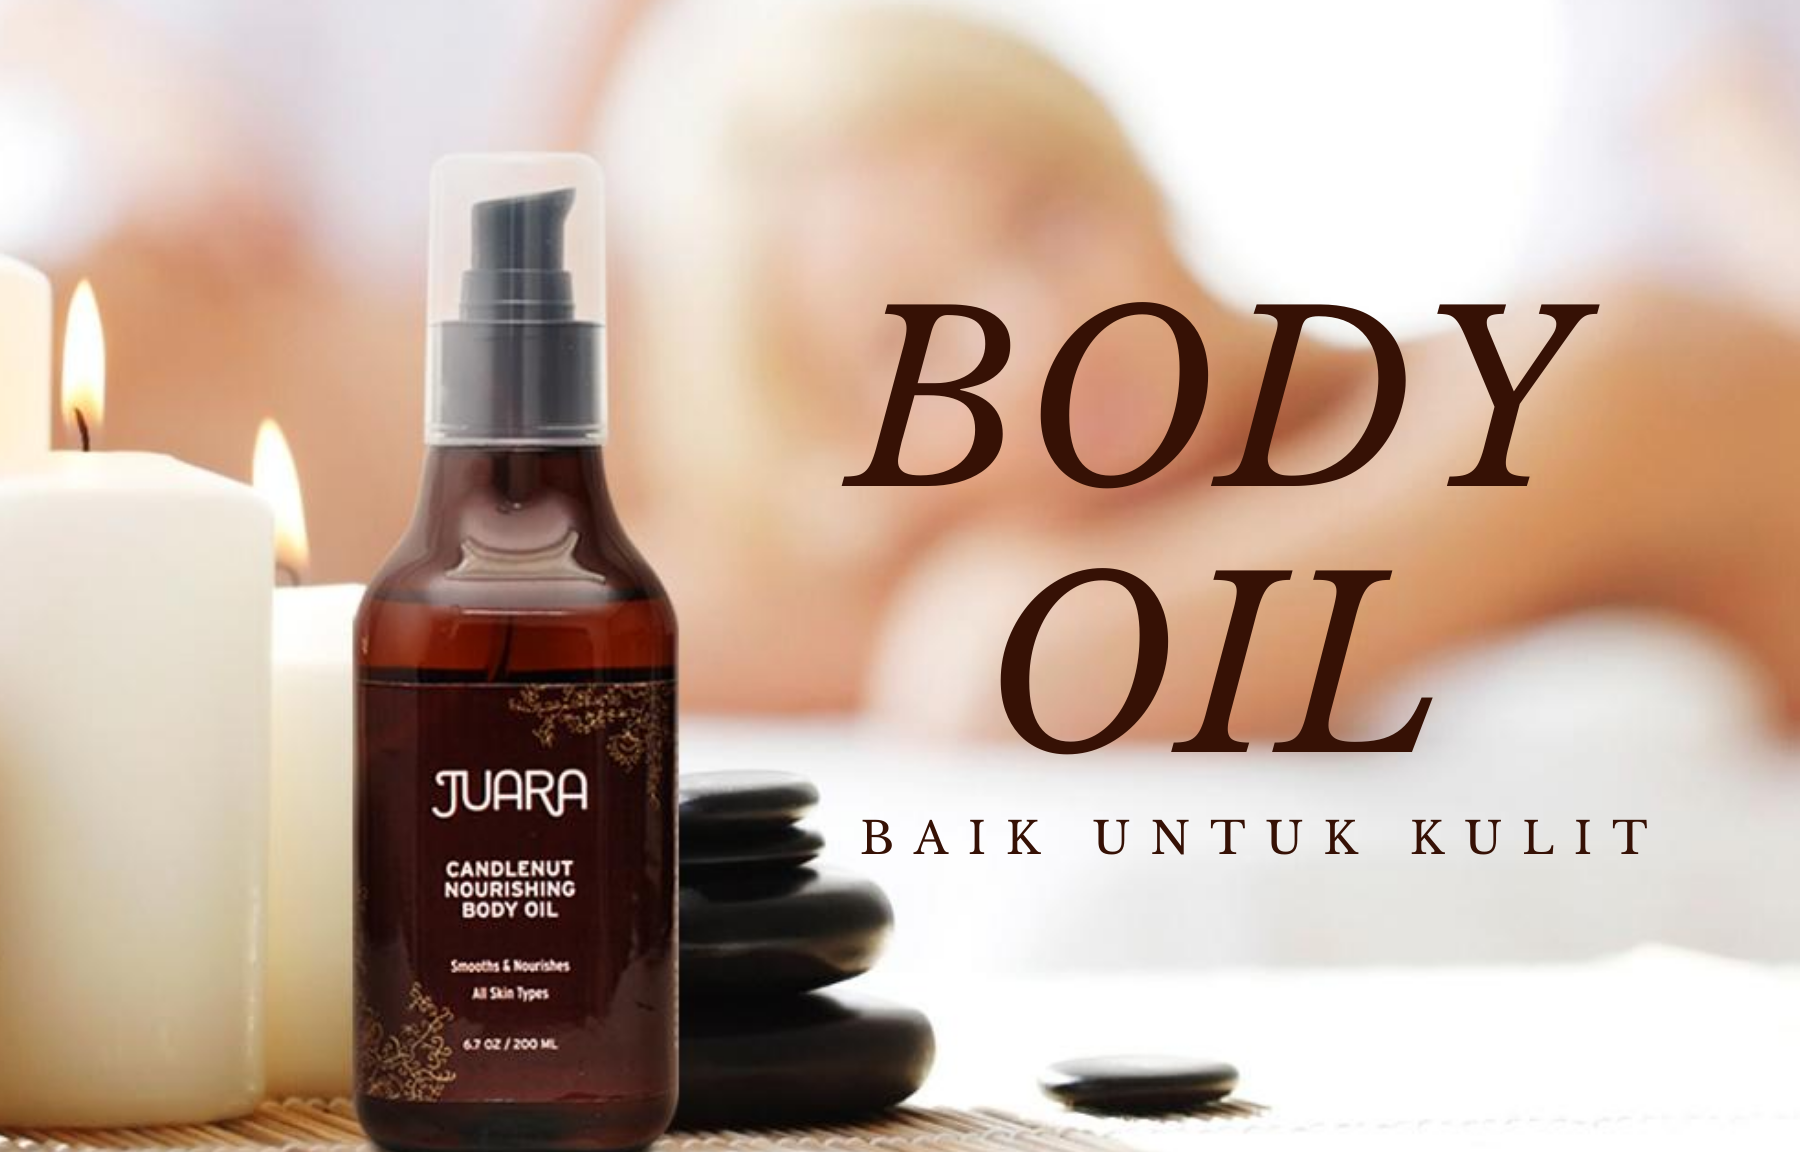 Body Oil, baik untuk kulit